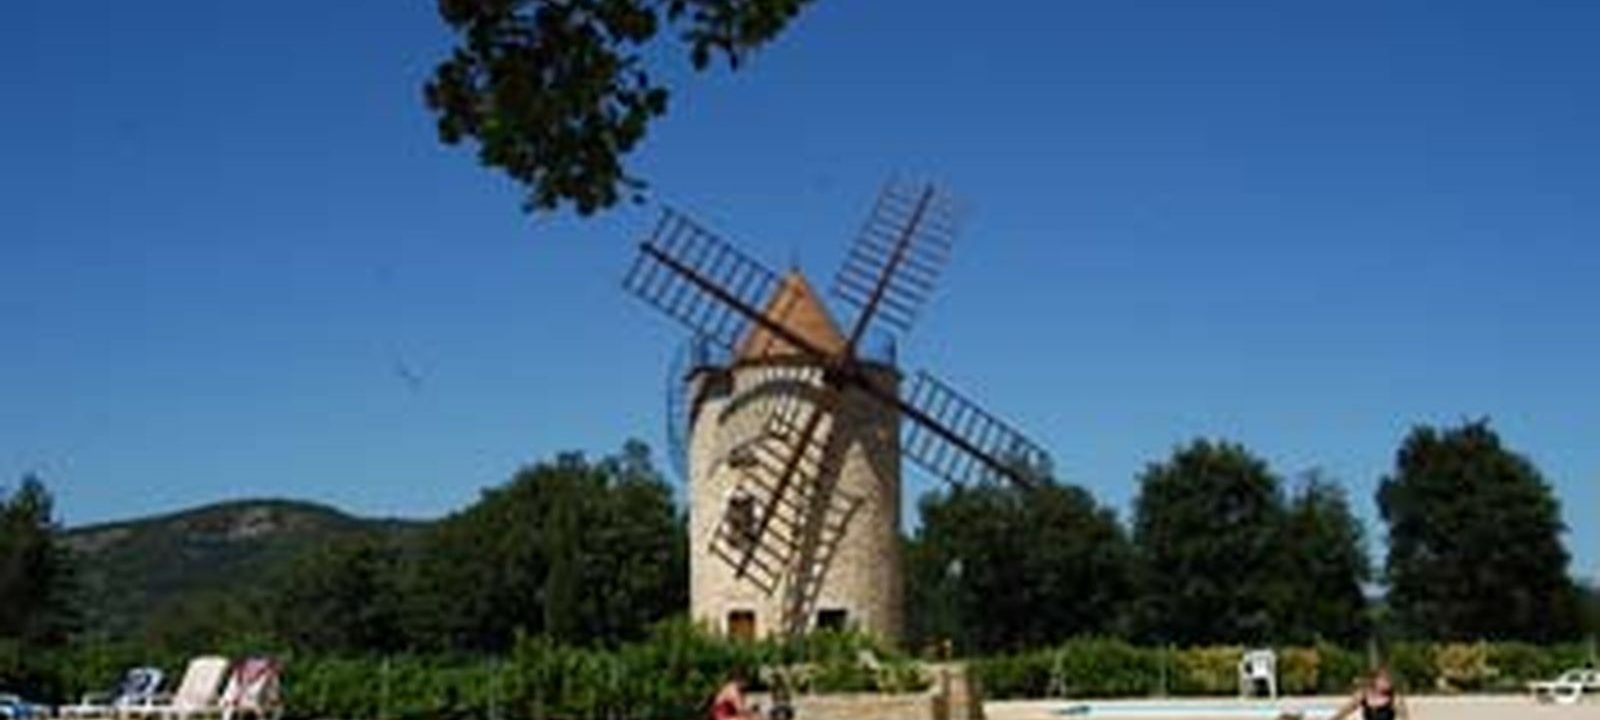 Village of S/C homes Le Moulin